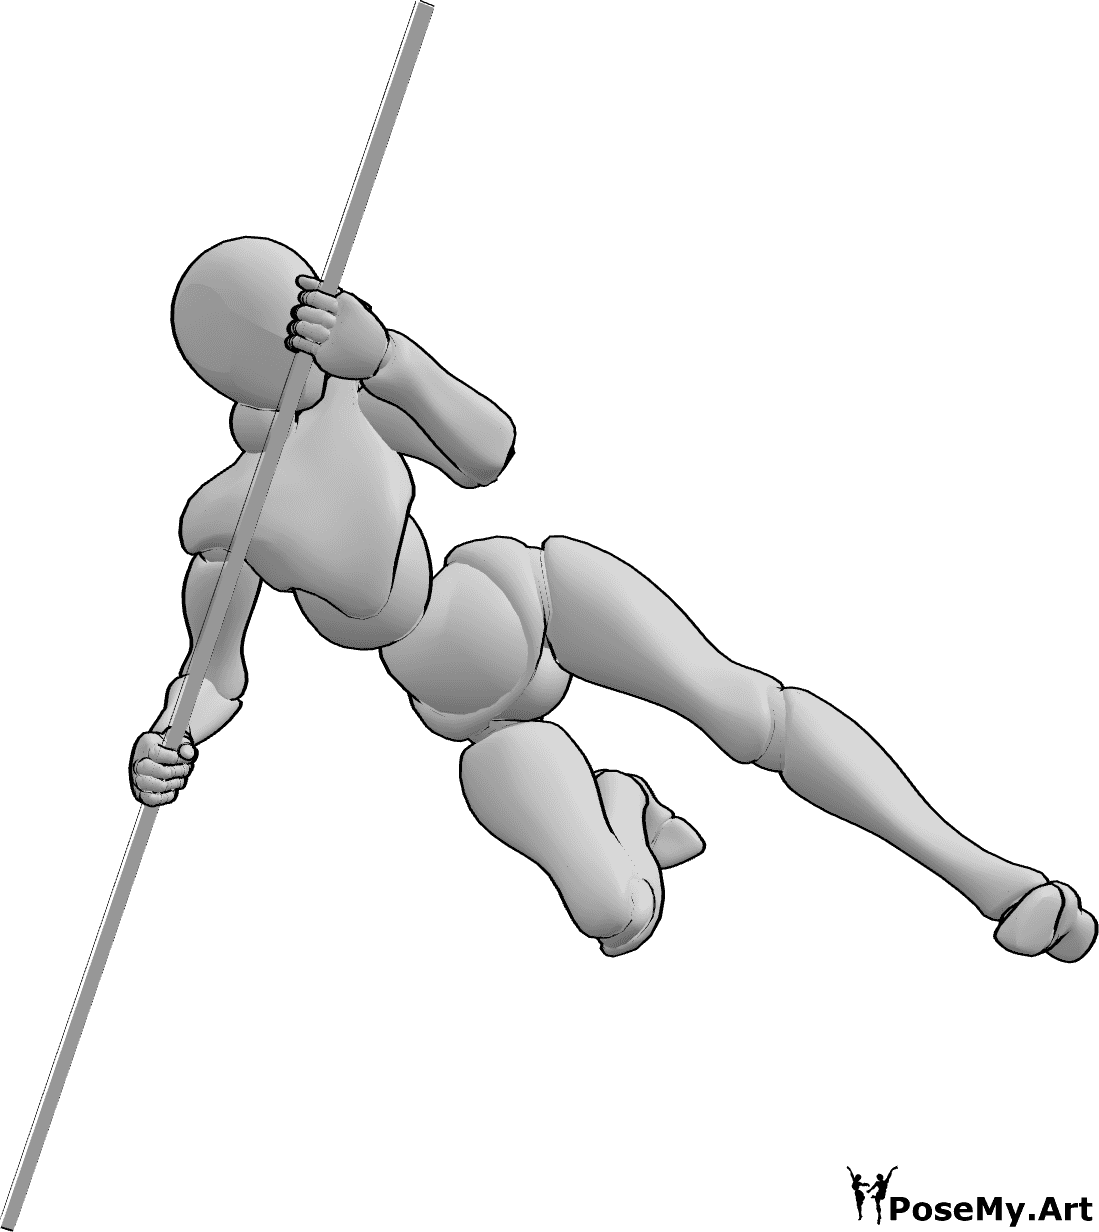 Riferimento alle pose- Salti femminili in posa - La donna salta in alto e calcia mentre si appoggia al bastone.